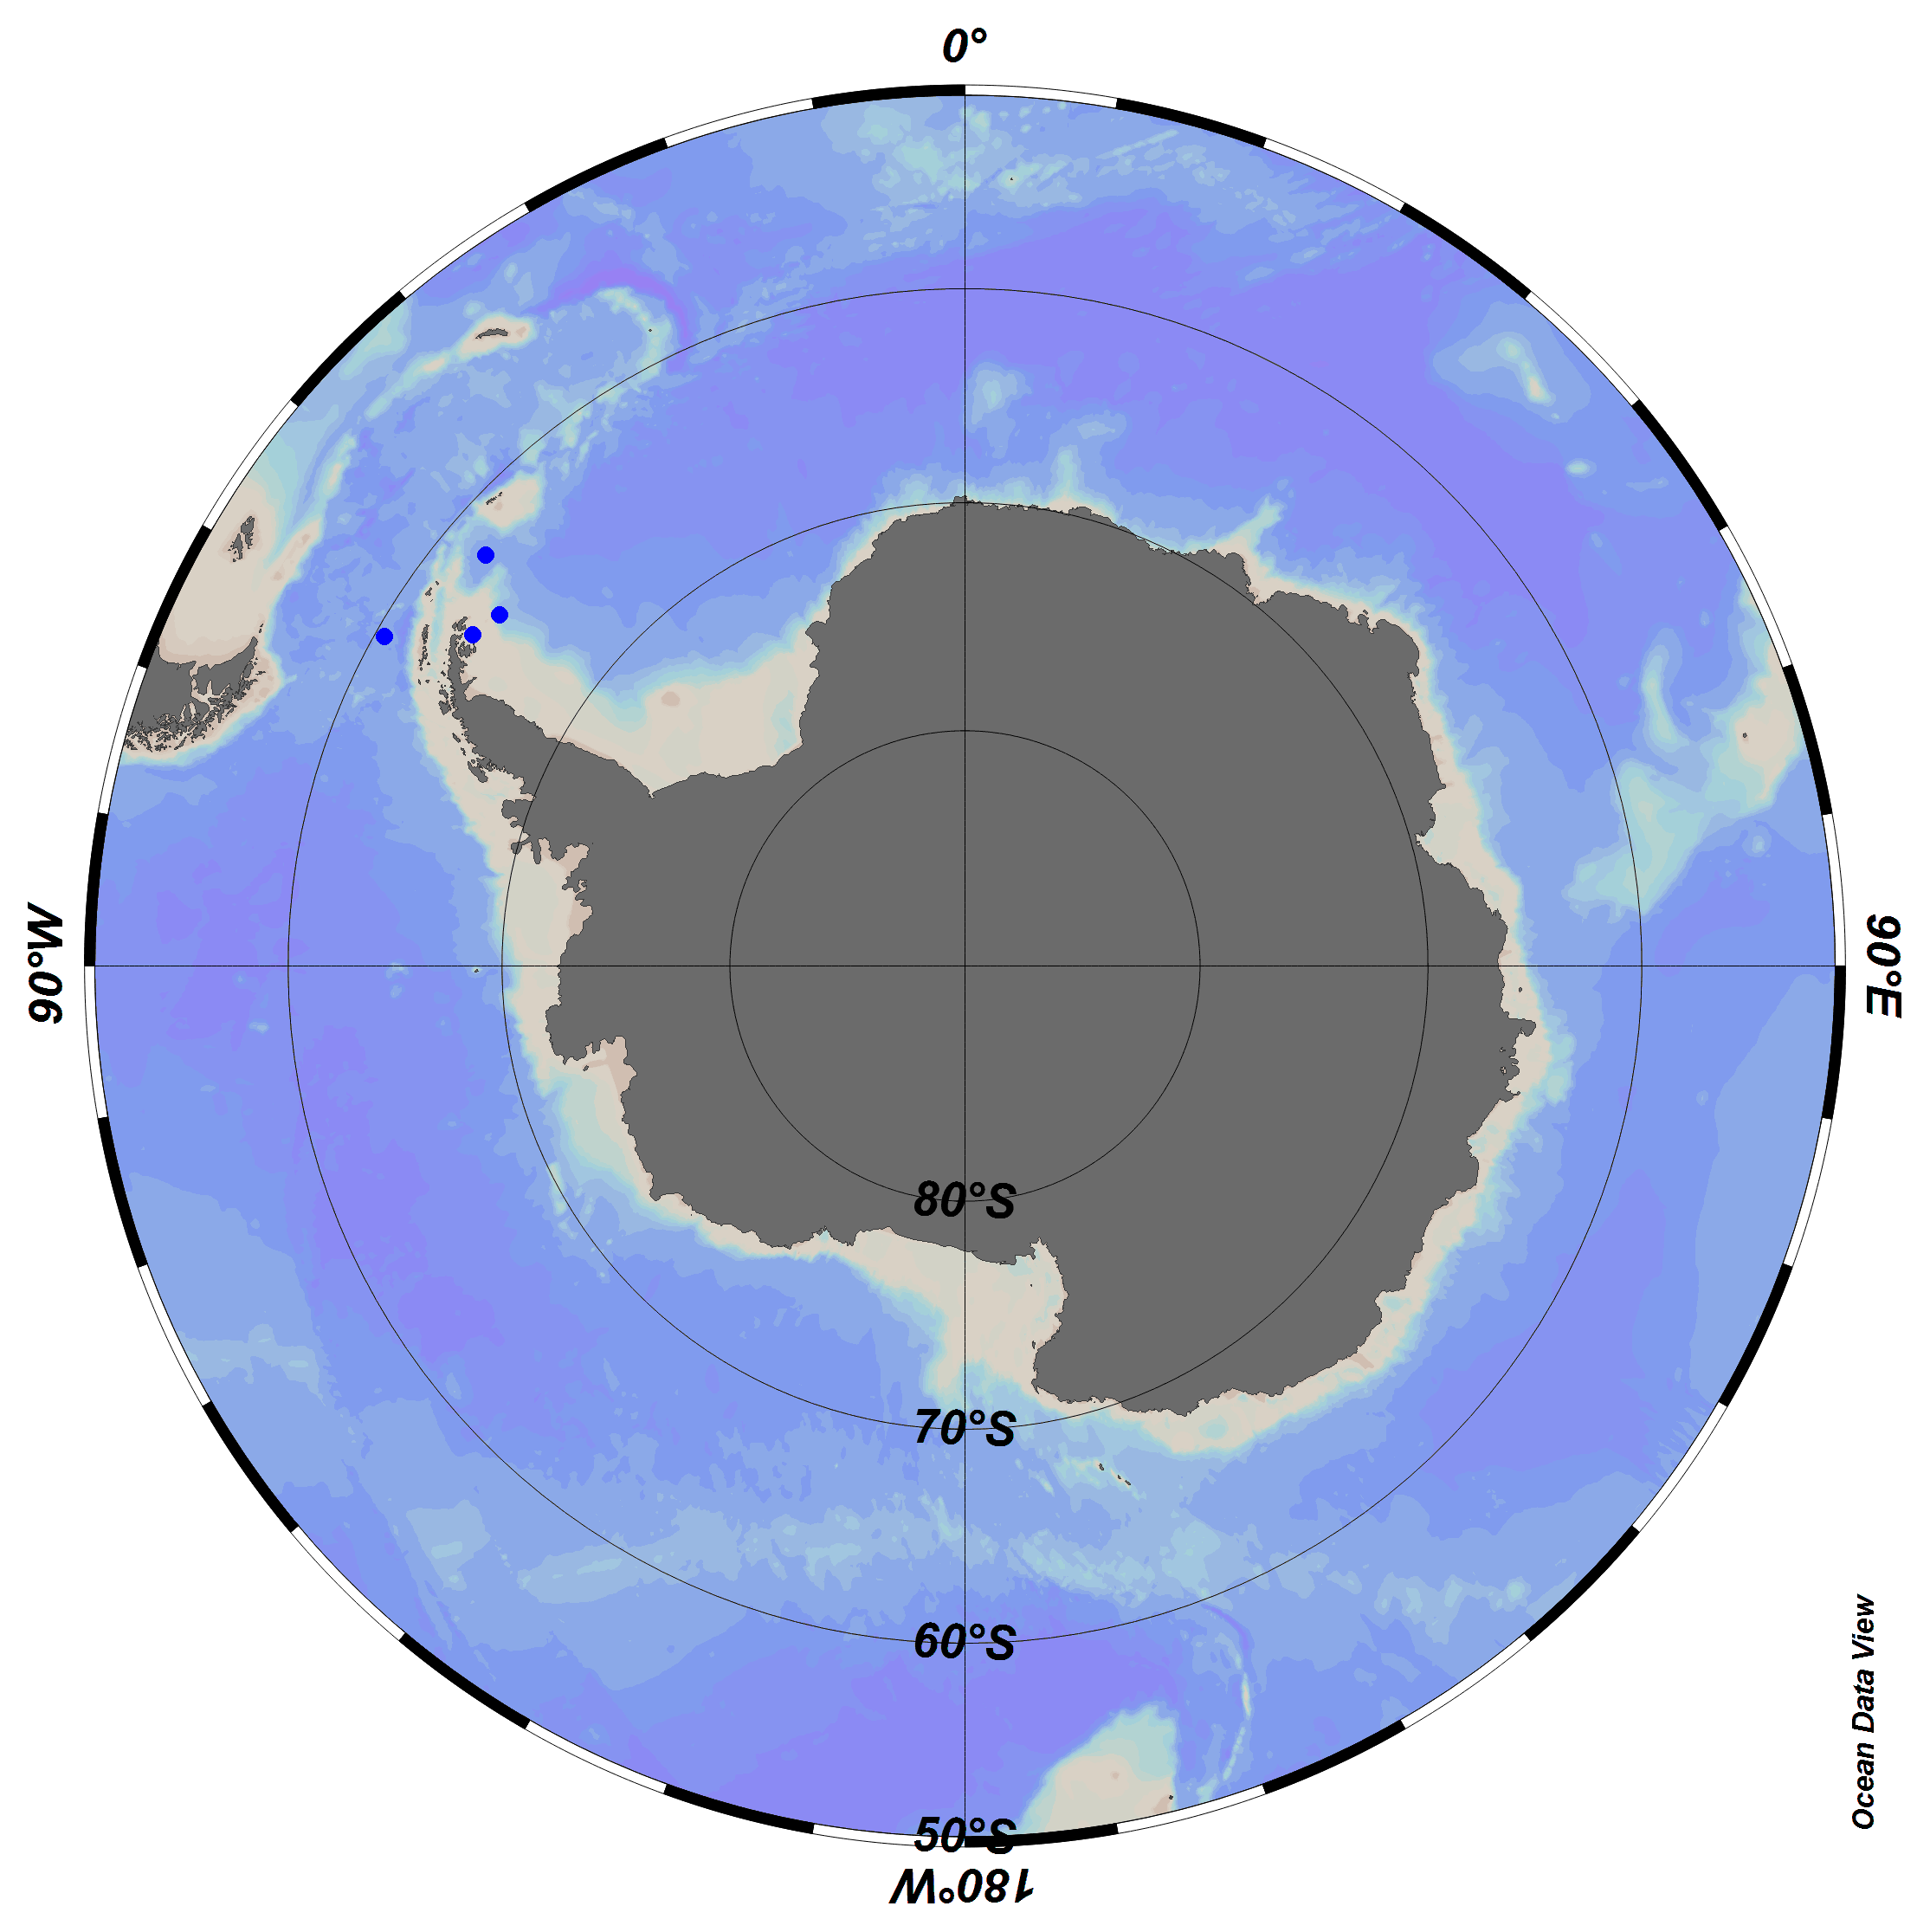 Southern Ocean